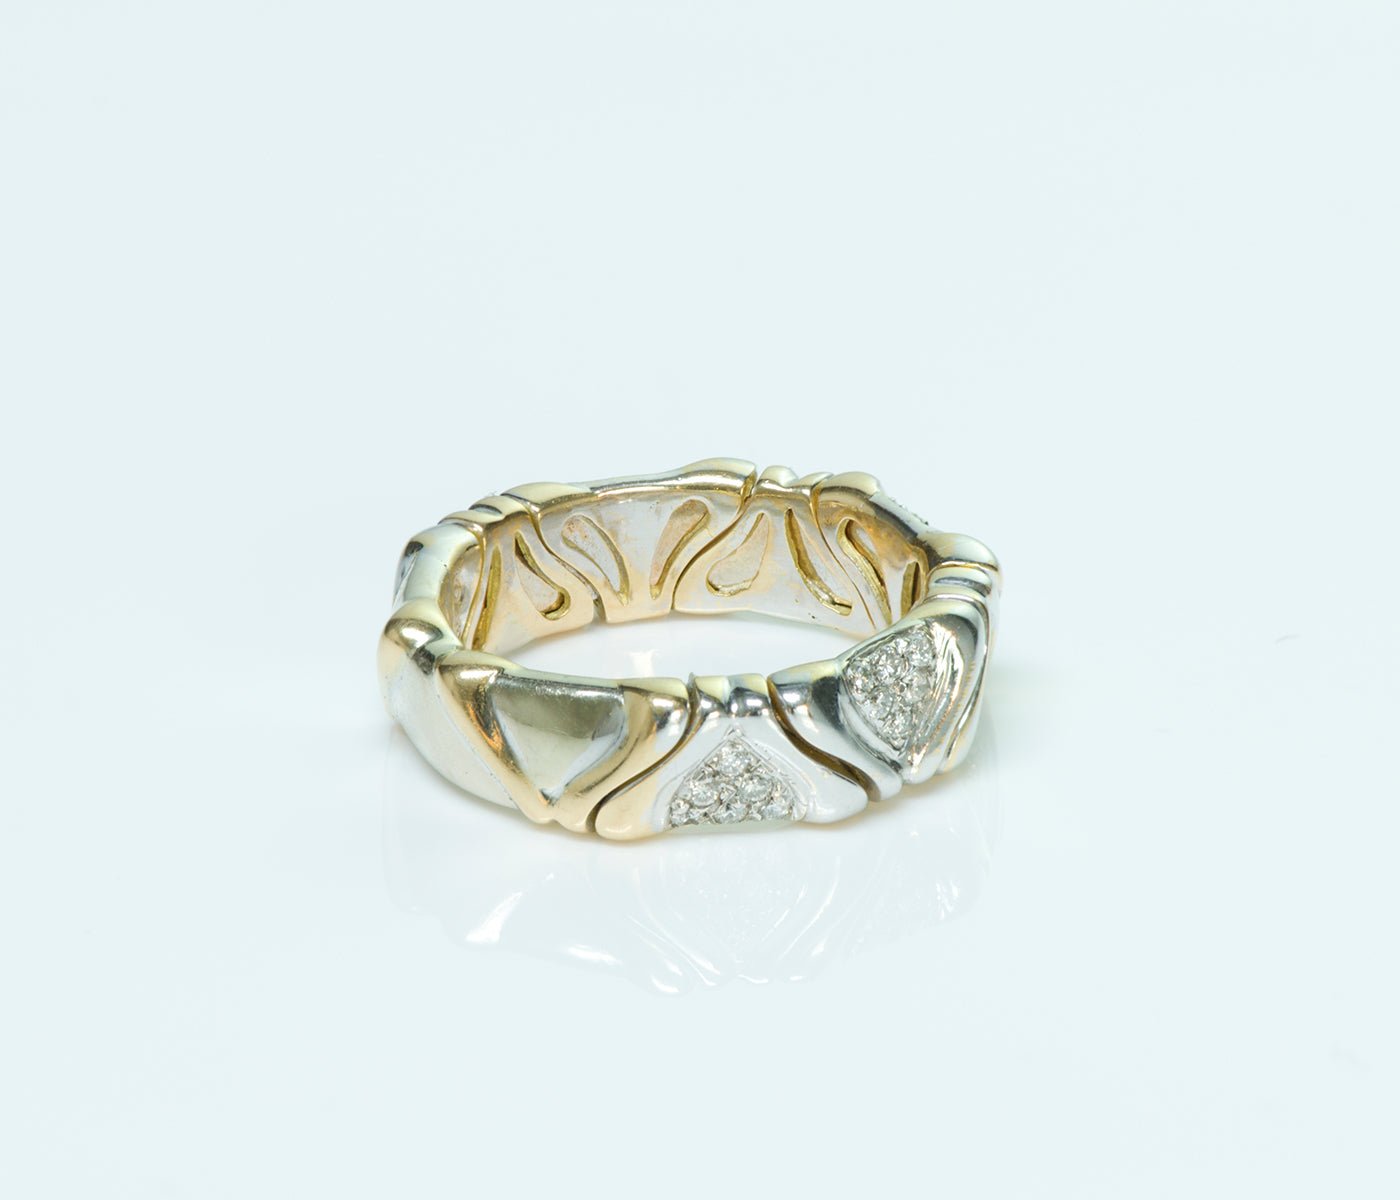 Marina B Diamond 18K Gold Ring